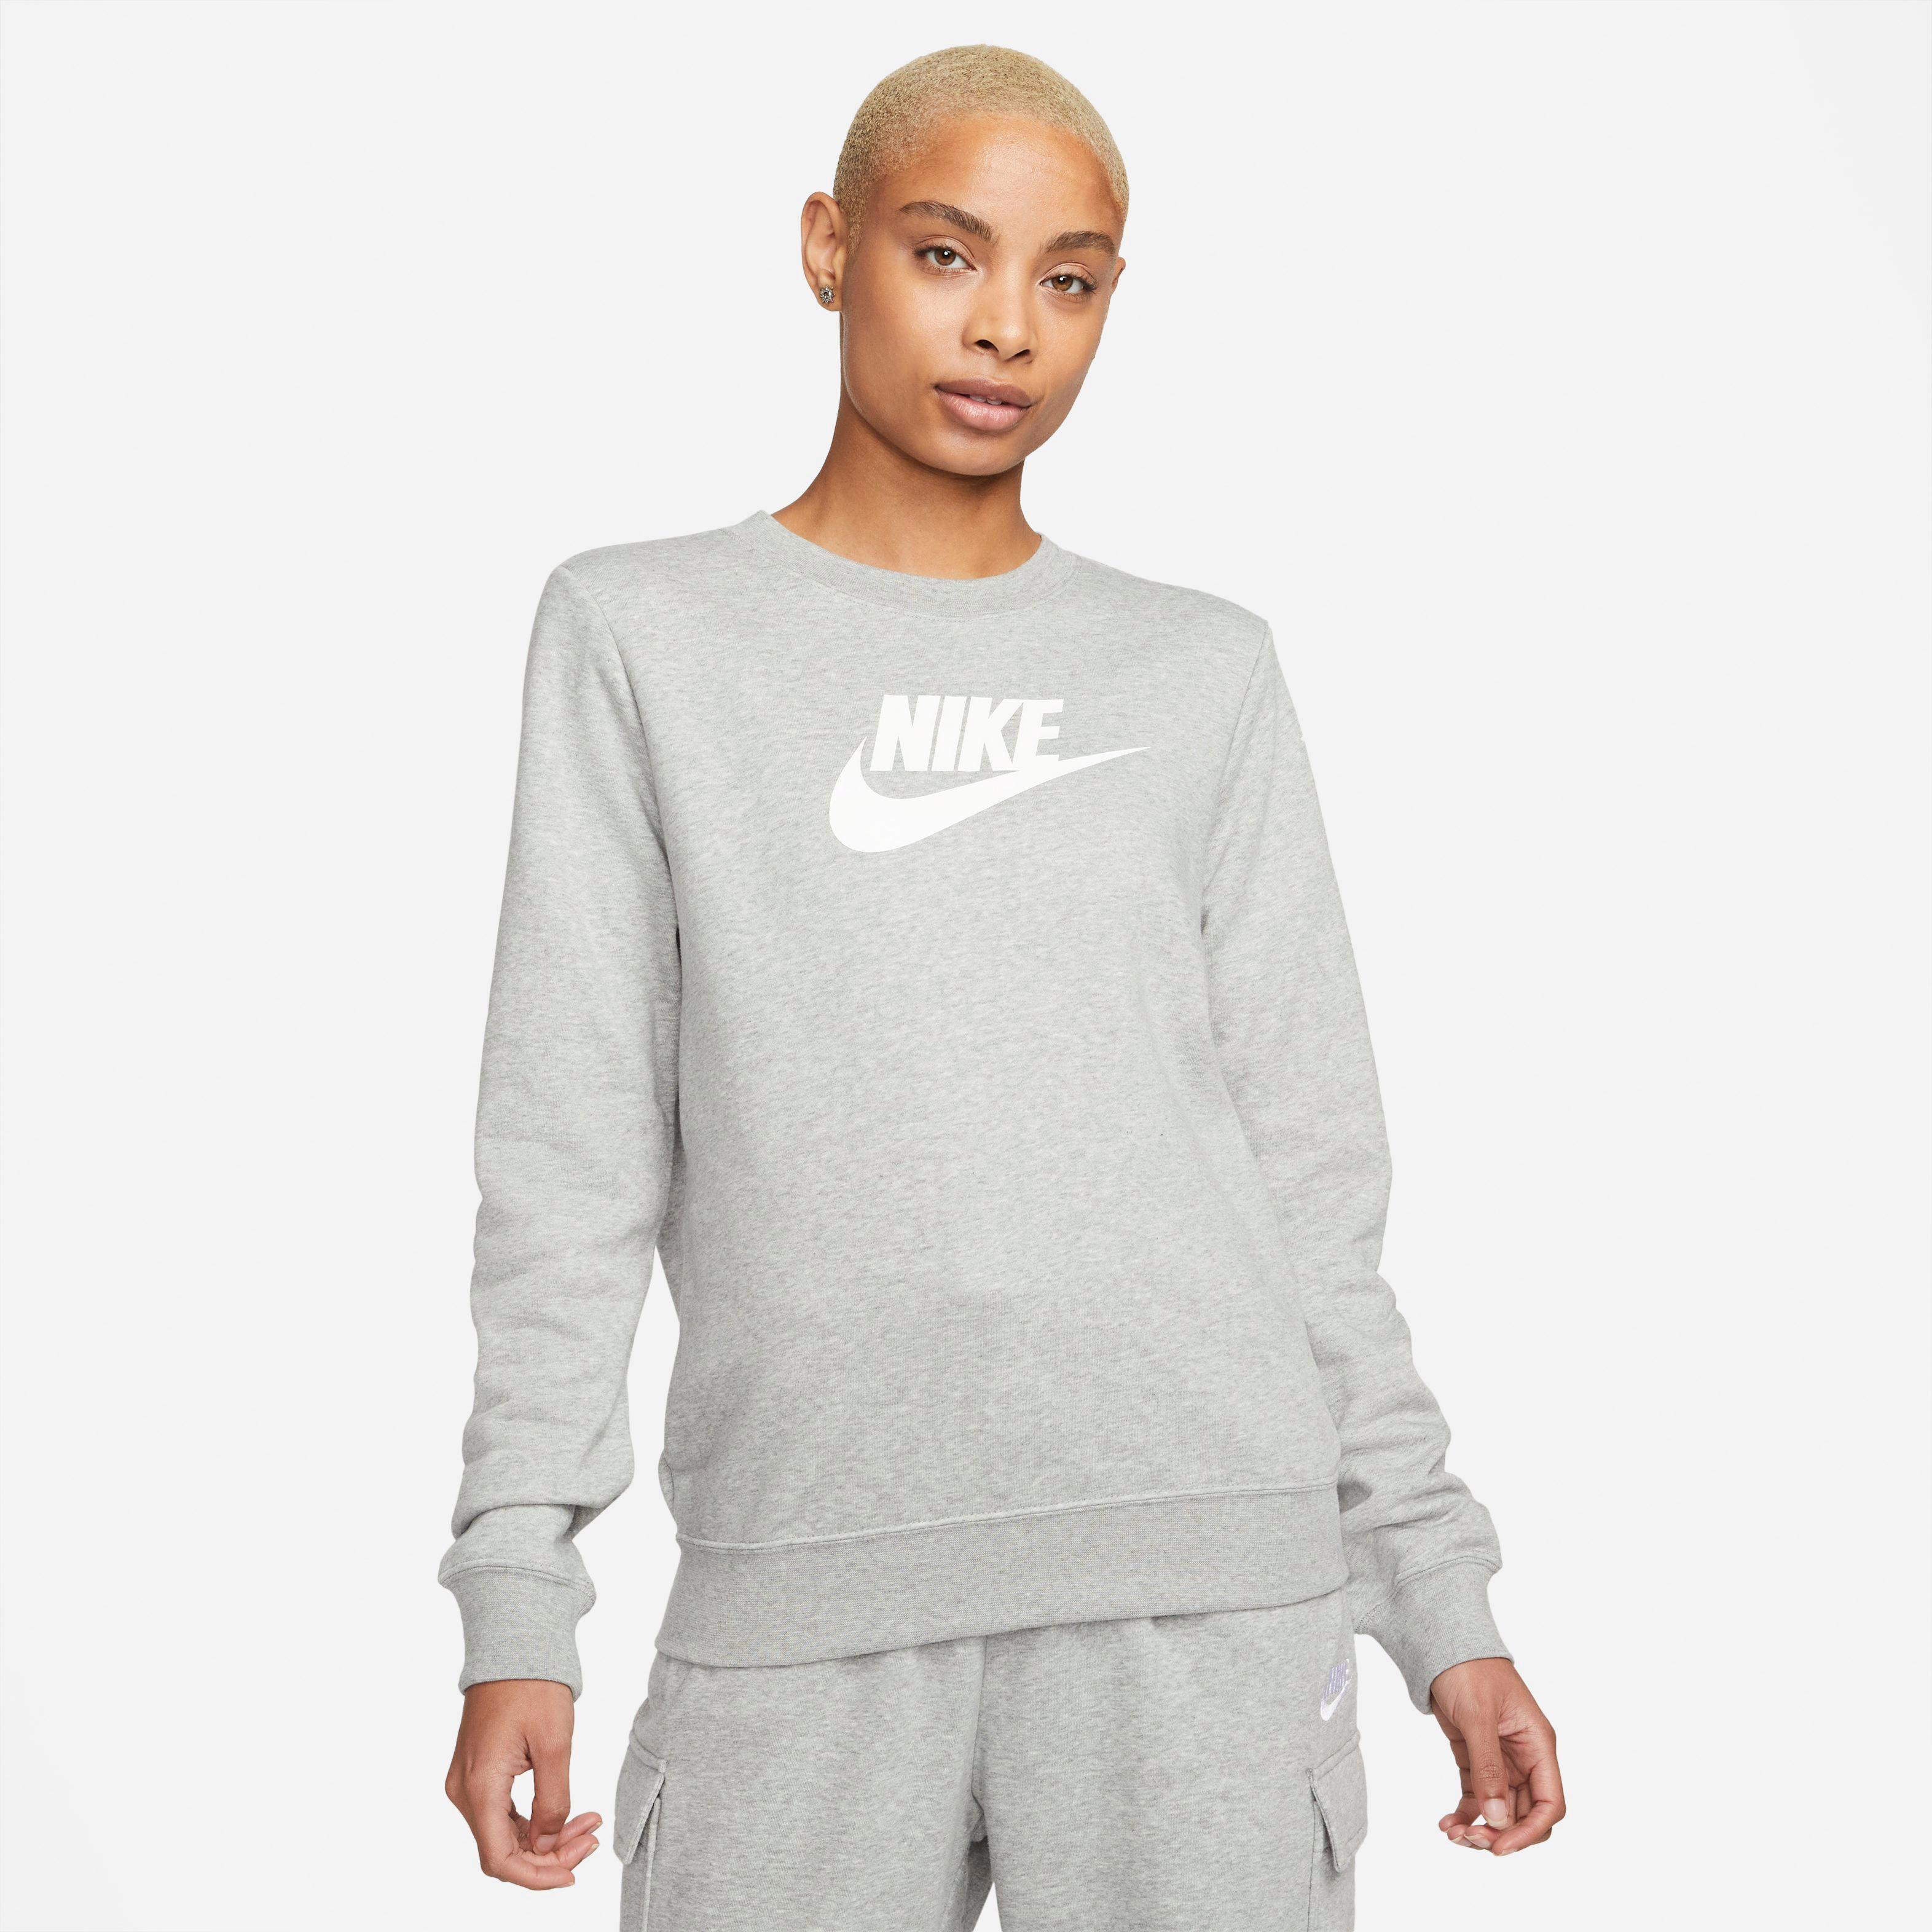 SportScheck kaufen CLUB von Sweatshirt NSW Online Damen heather-white grey Shop dk Nike im